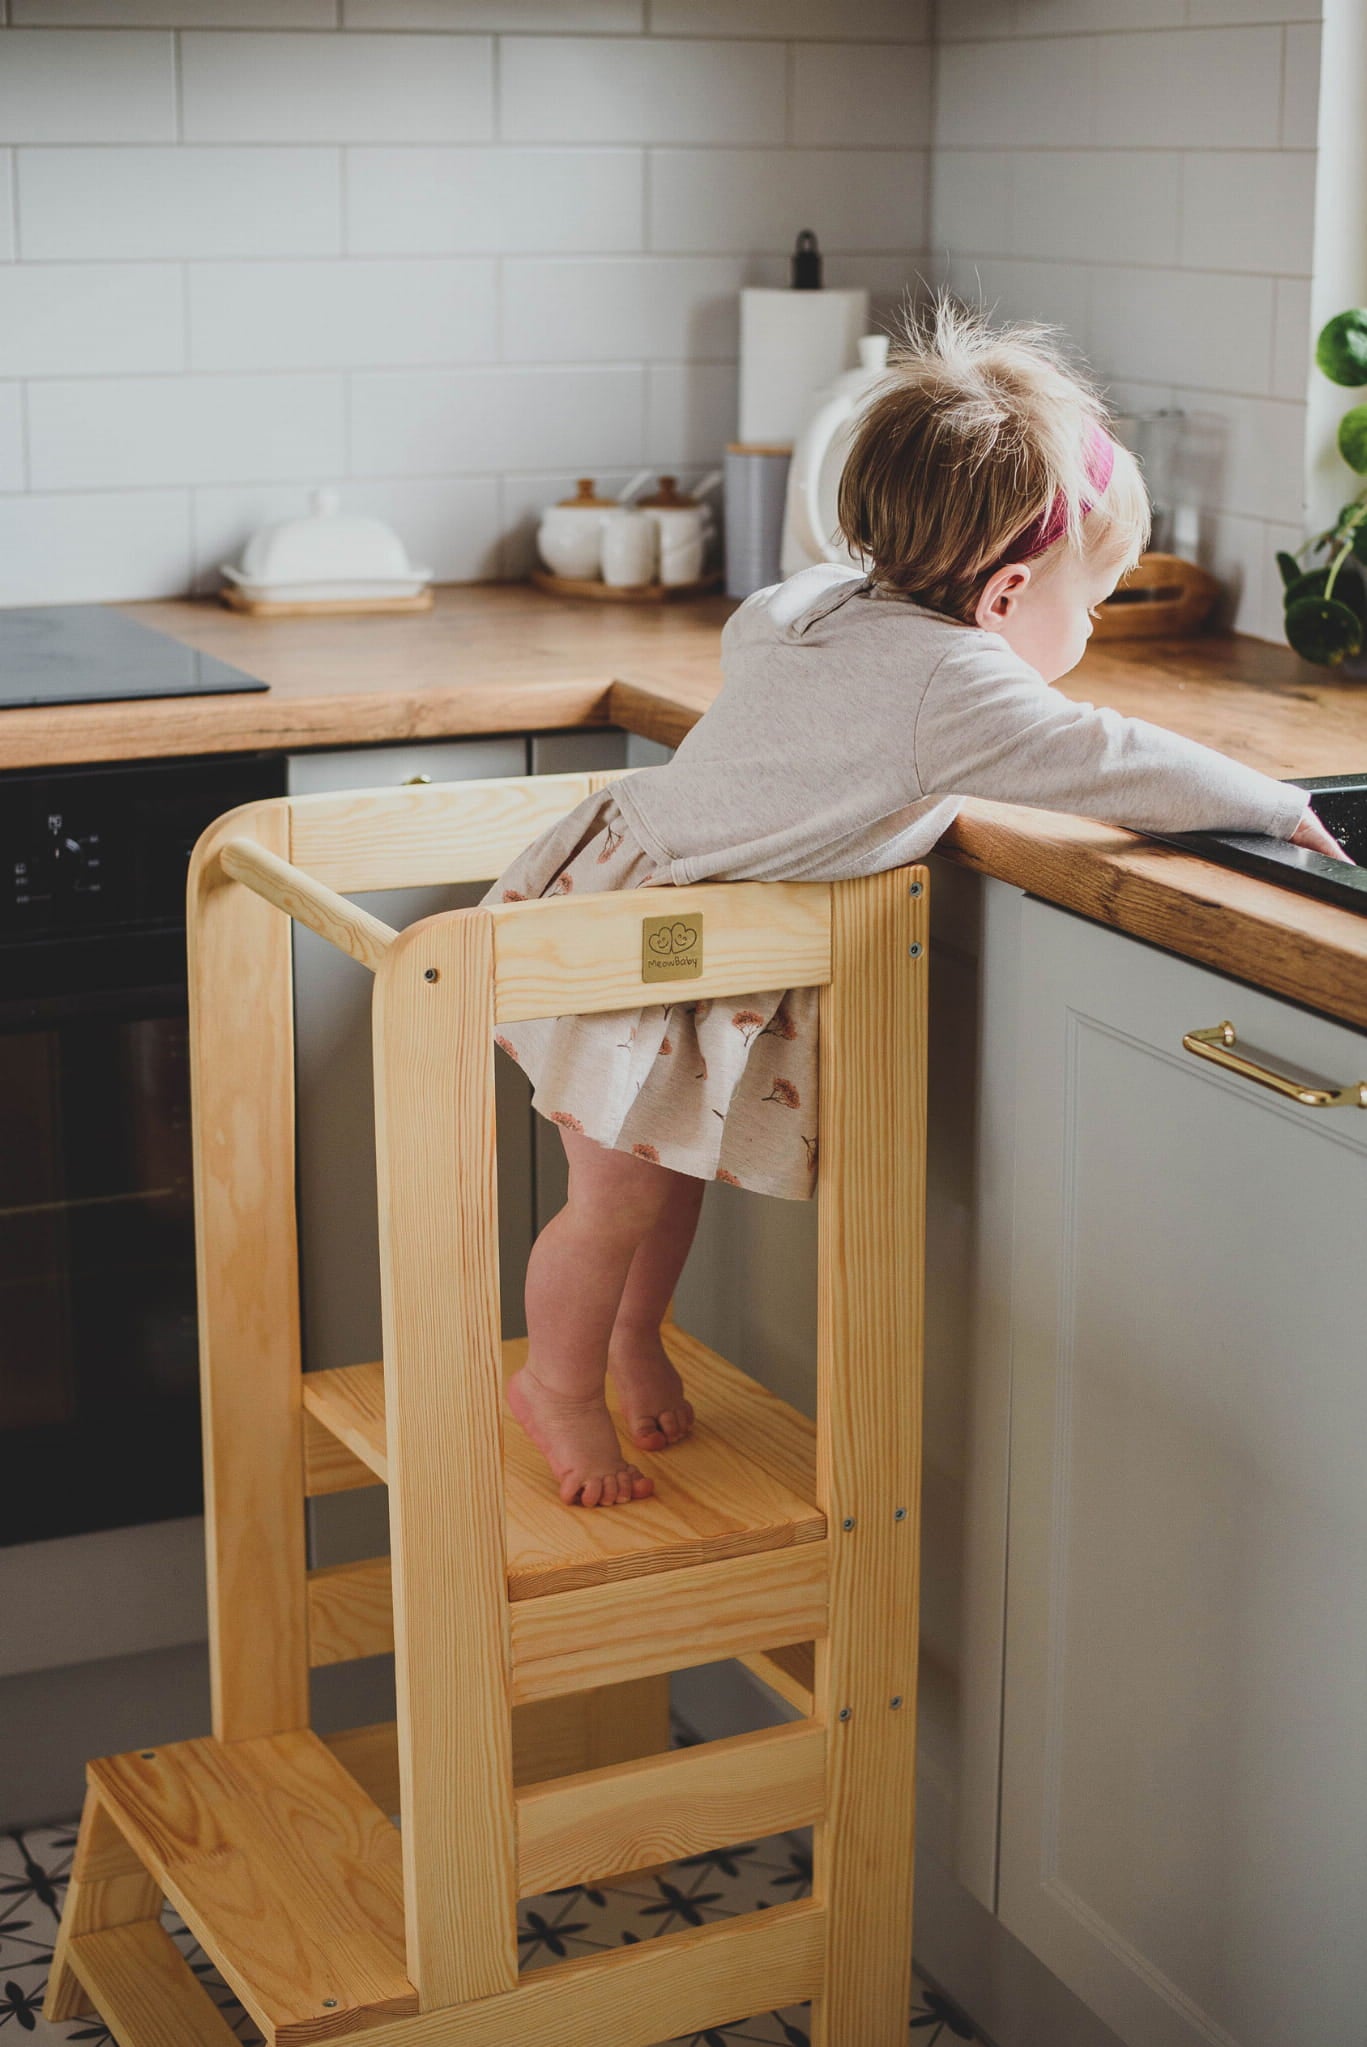 MeowBaby® Kitchen Helper z Tablicą Pomocnik Kuchenny dla Dziecka, Naturalne drewno